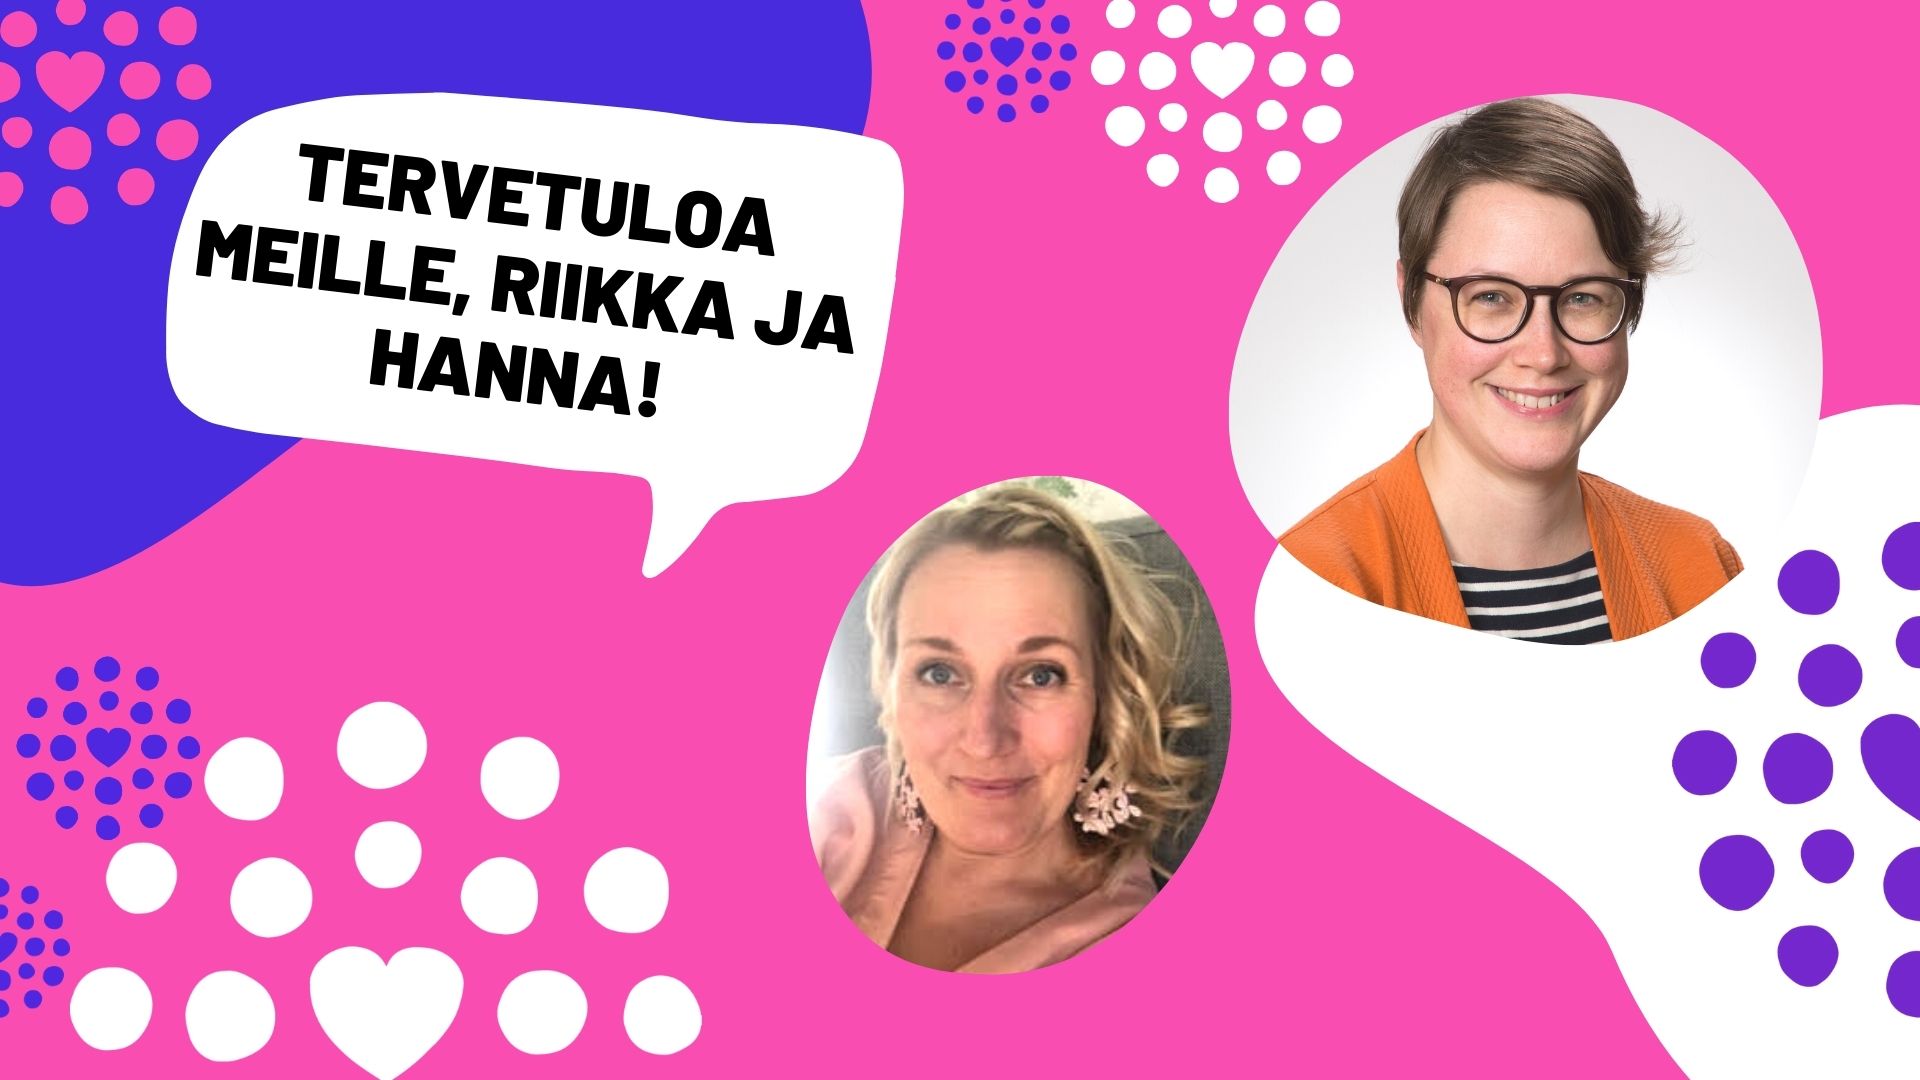 Kuvakollaasissa Hanna Rajalin ja Riikka Myllys, Lasten ja nuorten keskuksen liikemerkkejä ja teksti "tervetuloa meille, Riikka ja Hanna!"